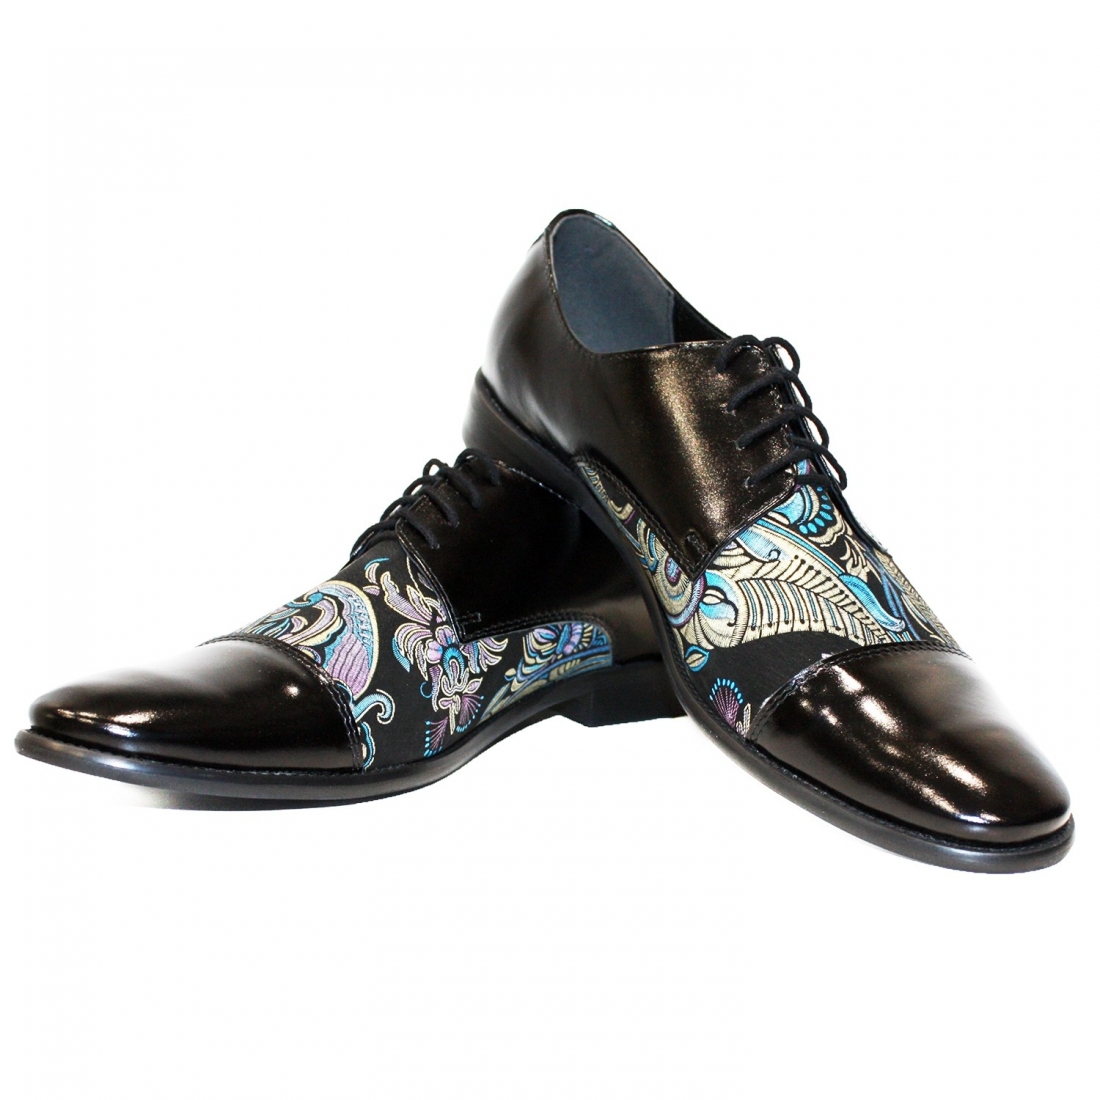 Modello Ulerro - Buty Klasyczne - Handmade Colorful Italian Leather Shoes